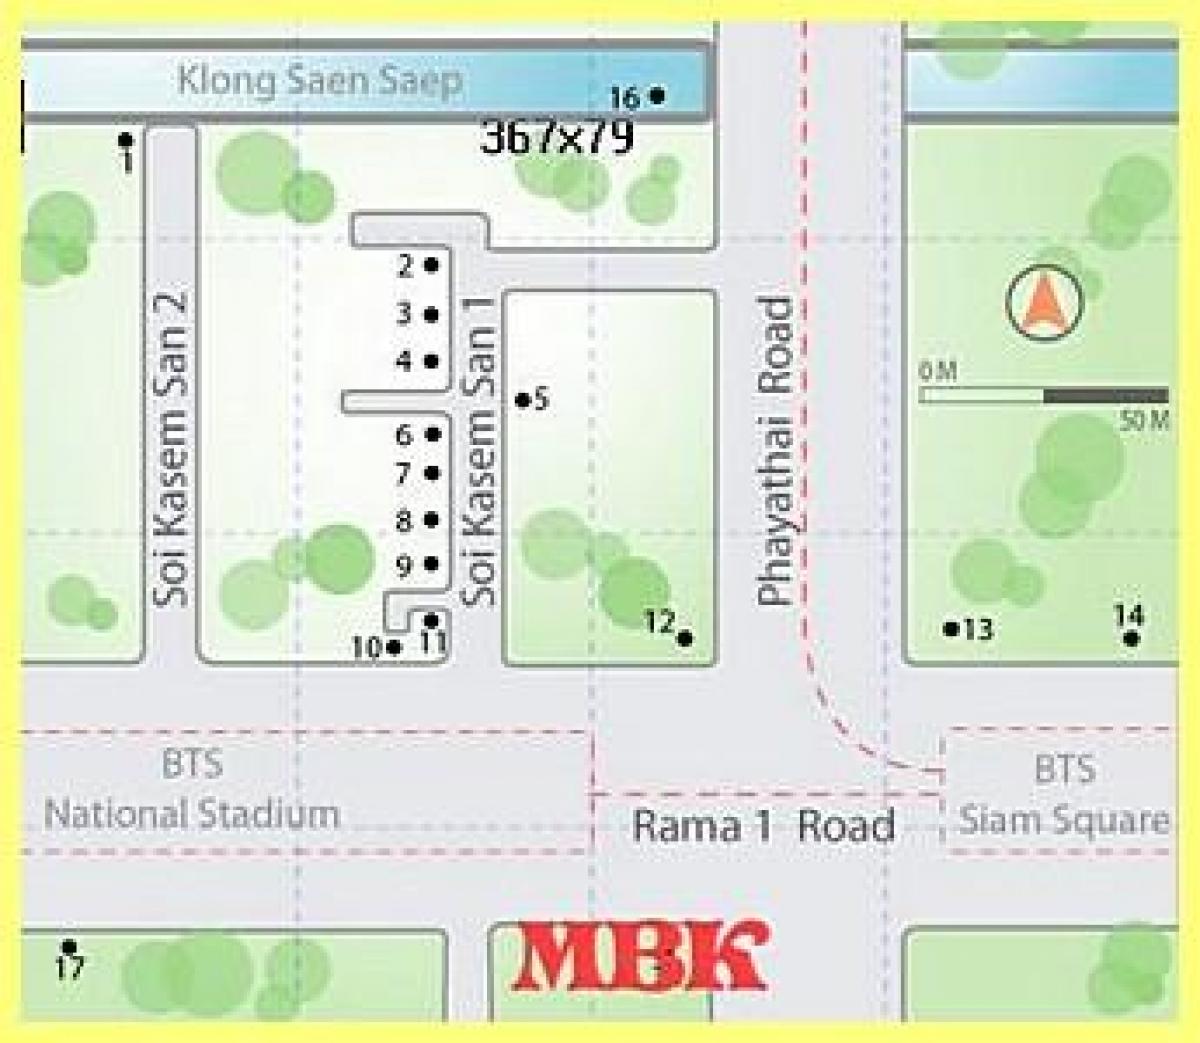 mbk शॉपिंग मॉल में बैंकाक नक्शा